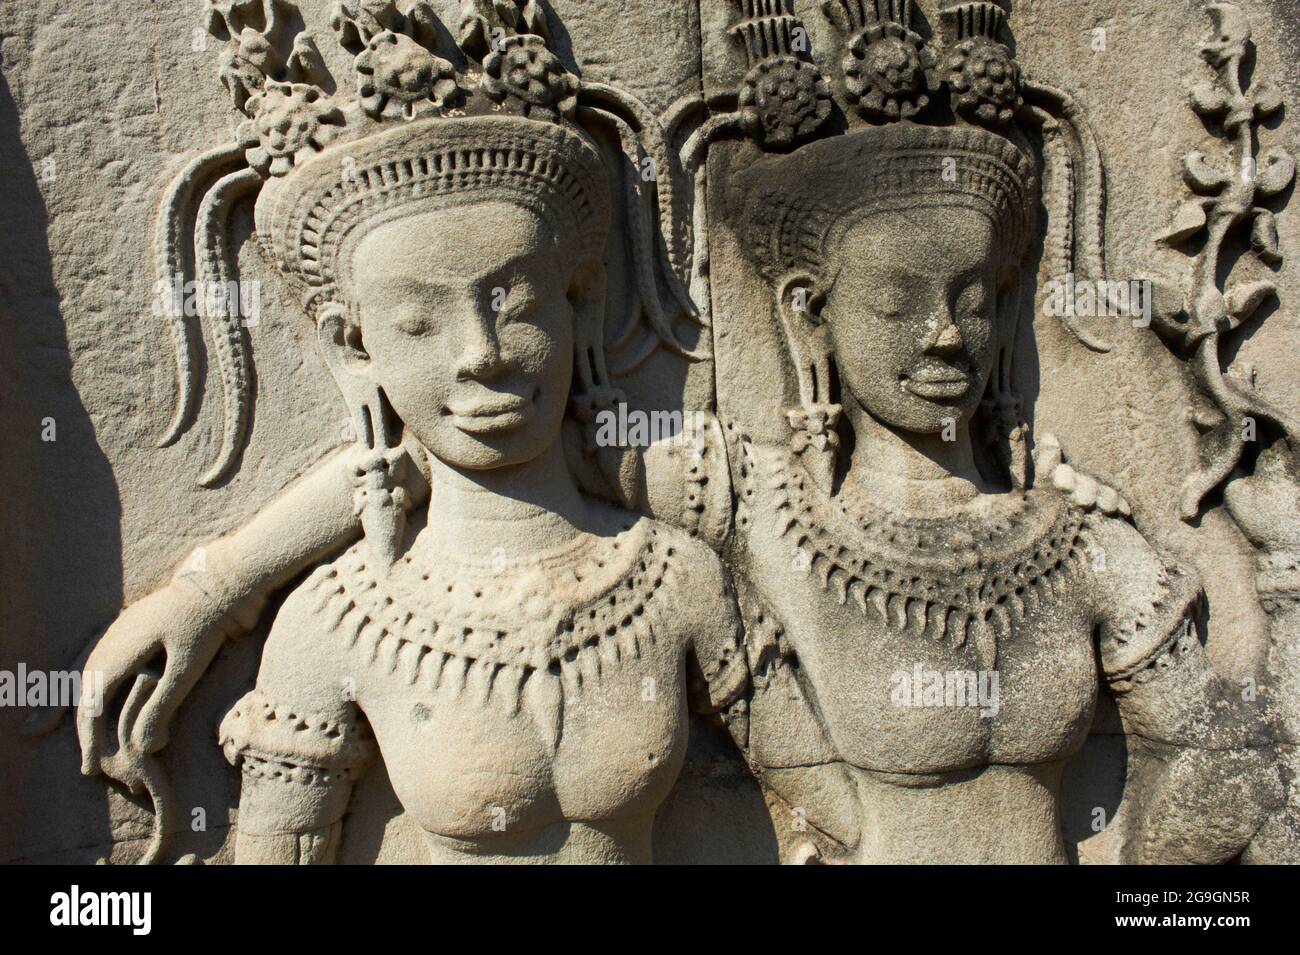 Asie du Sud-est, Cambodge, province de Siem Reap, site d'Angkor, patrimoine mondial Unseco de l'UNESCO depuis 1992, temple d'Angkor Wat (Angkor Vat), XIIe siècle, Banque D'Images